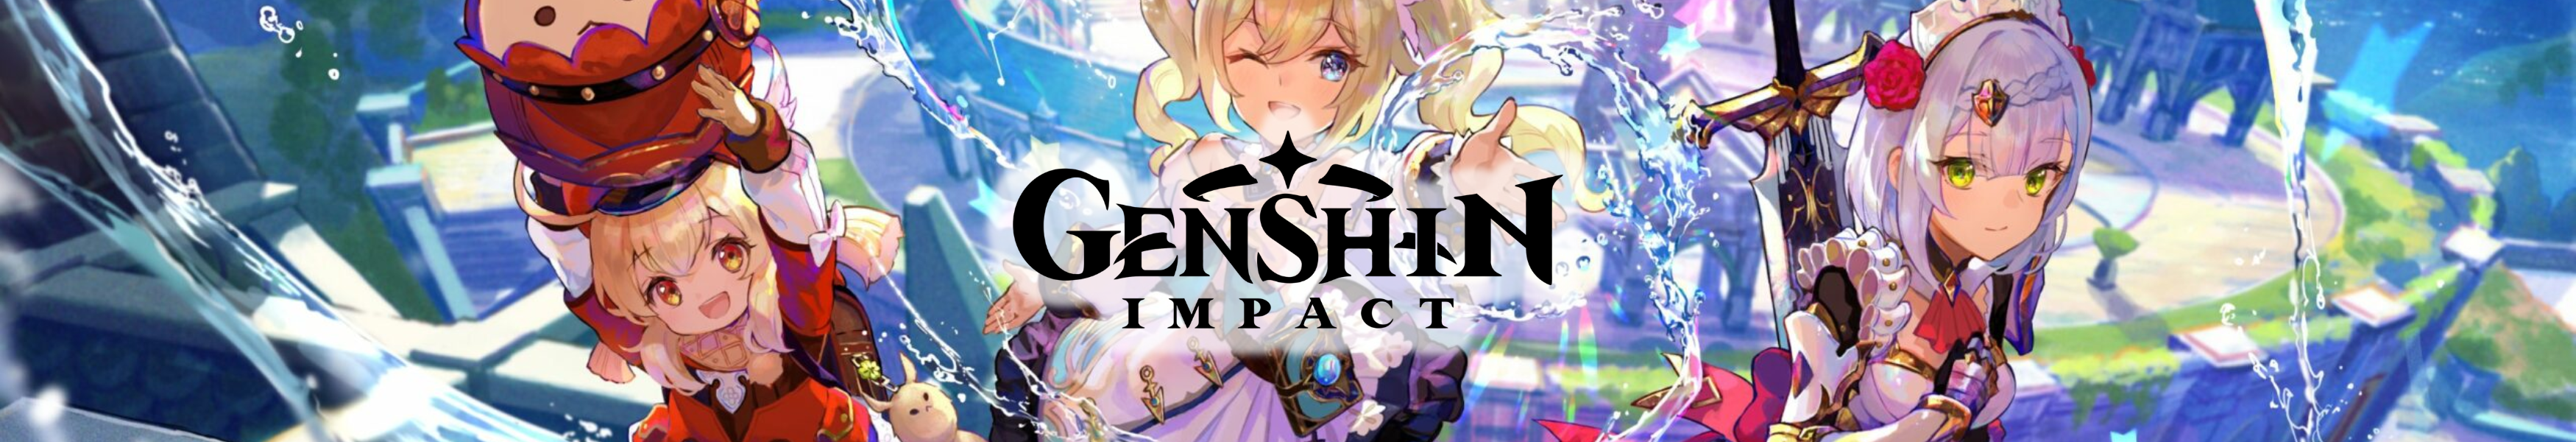 Genshin Impact Acrylic